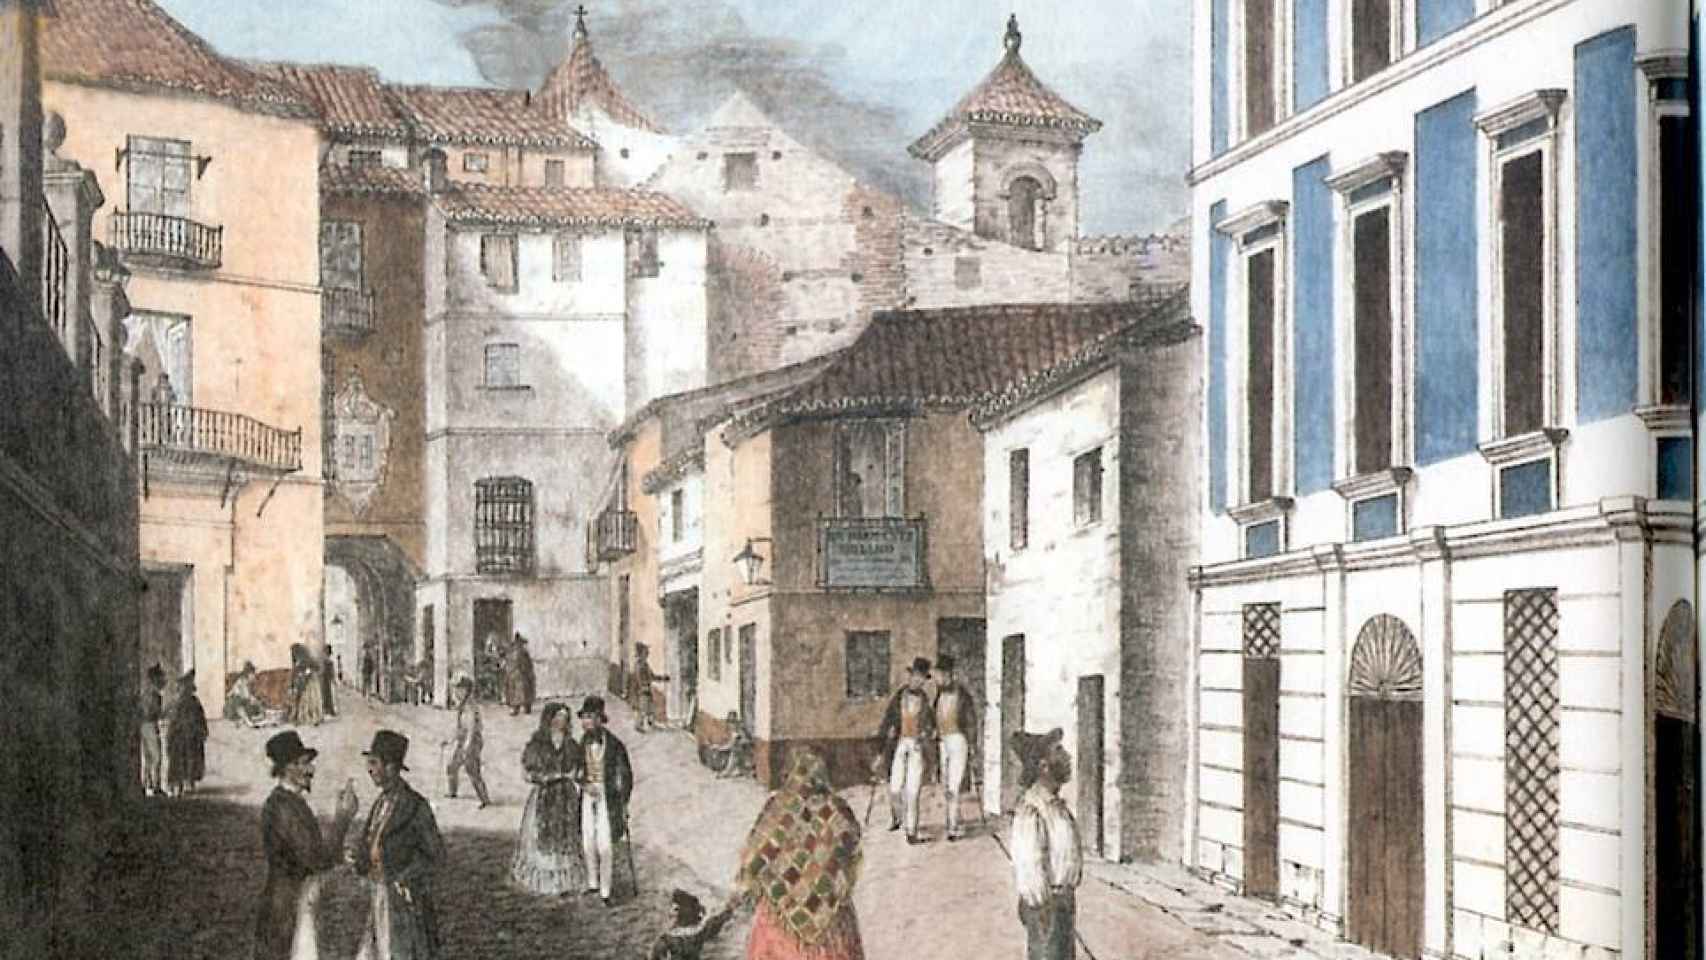 Ilustración de Francisco Pérez del Teatro Principal publicada en 1840.